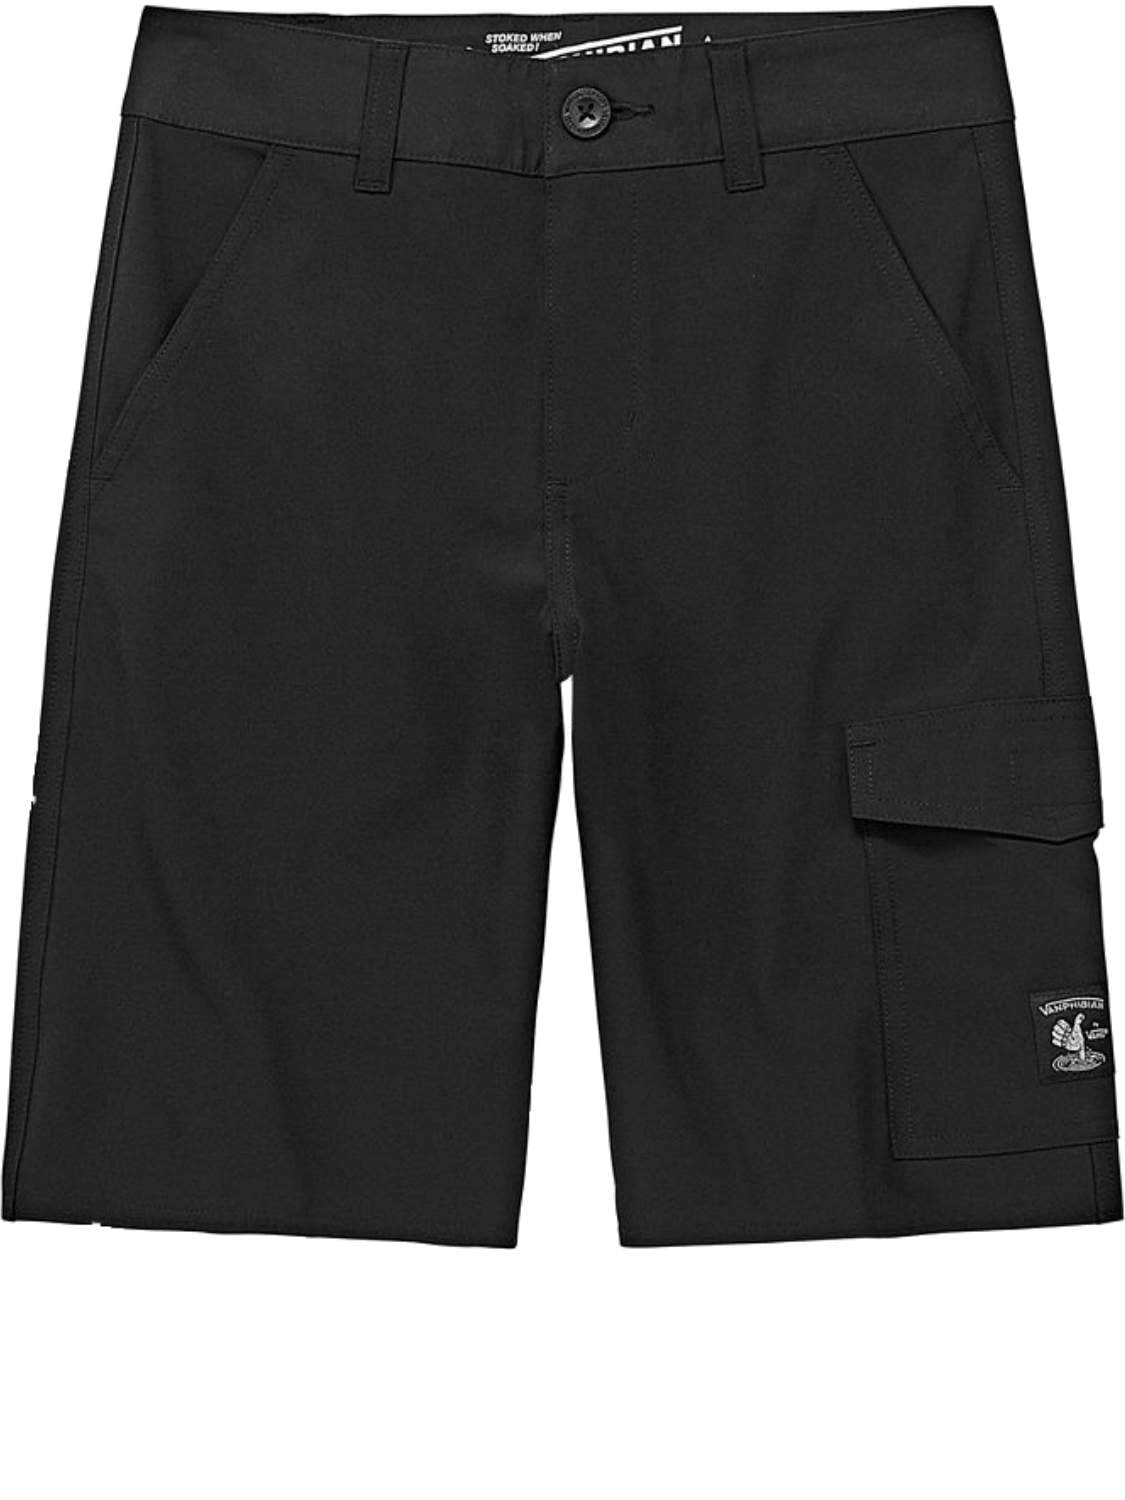 vanphibian shorts 36